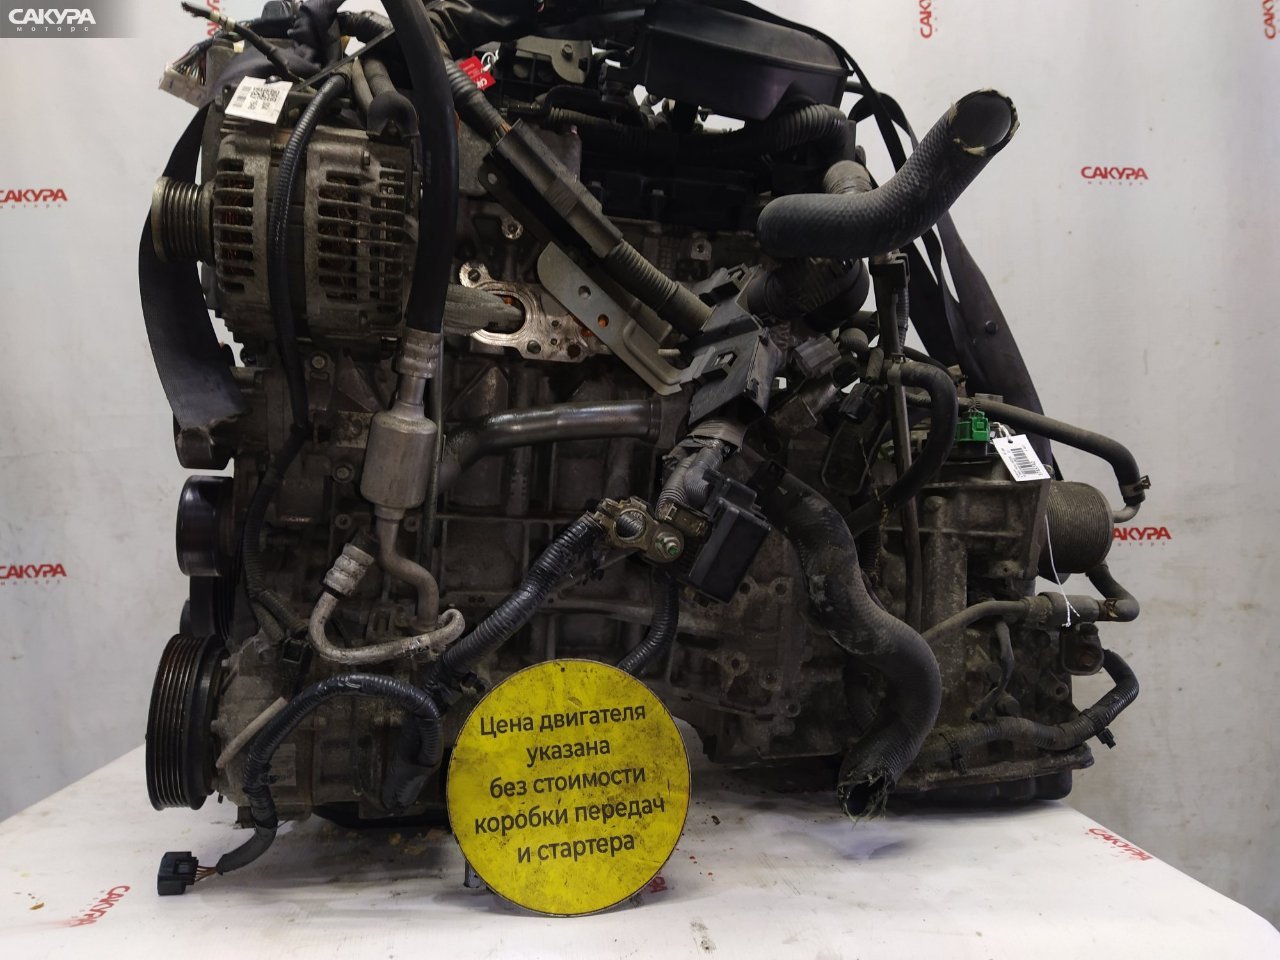 Двигатель Nissan X-TRAIL TNT31 QR25DE: купить в Сакура Красноярск.